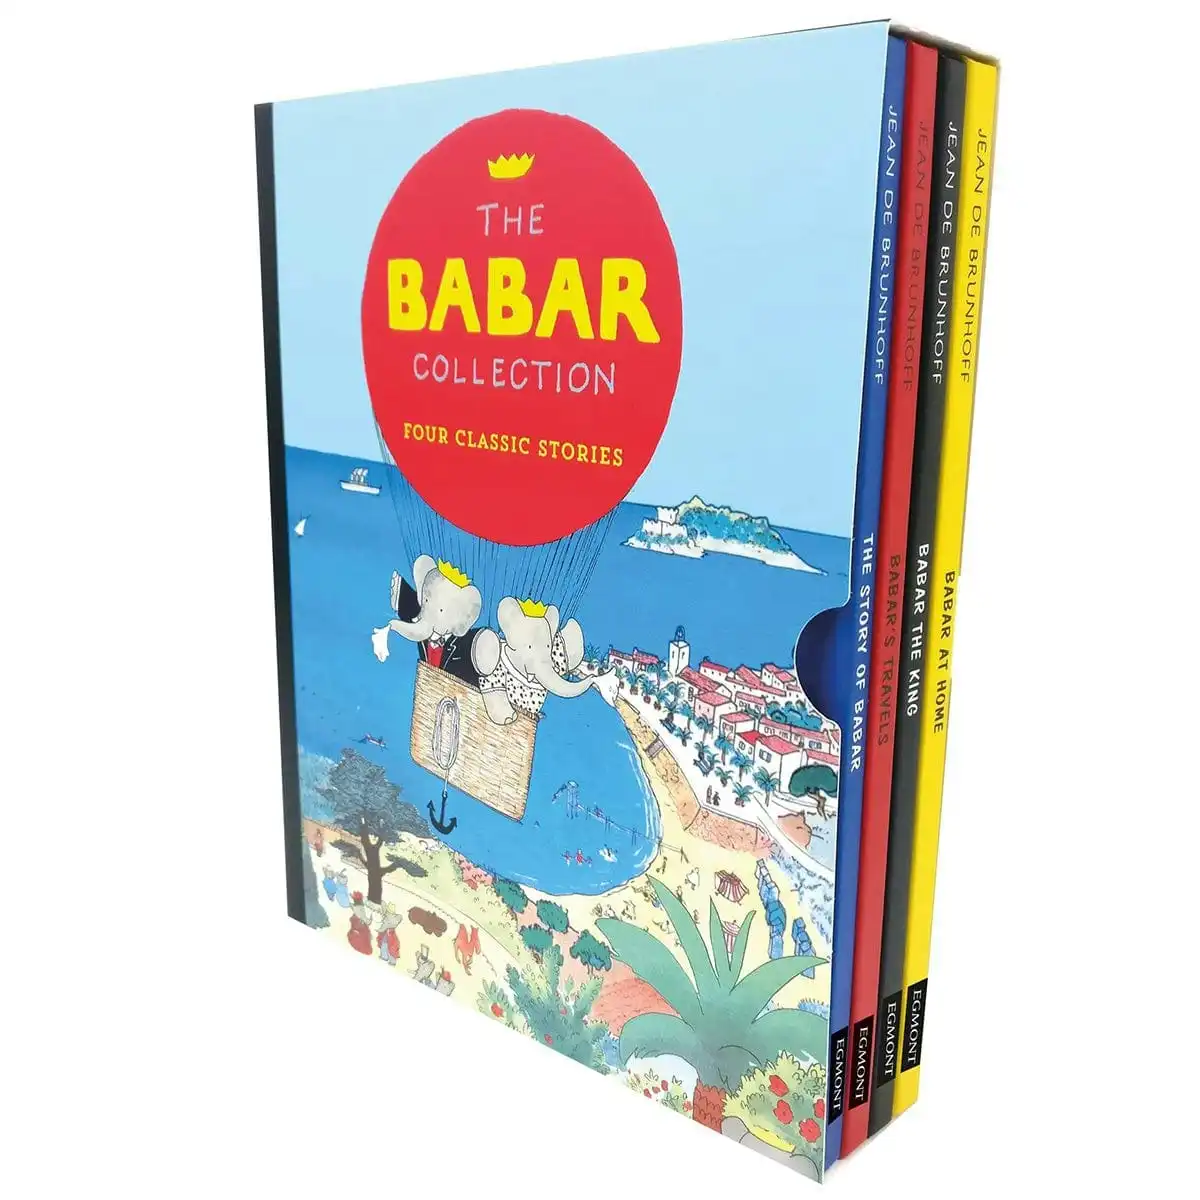 Barbar Slipcase - 4 Copy Box Set